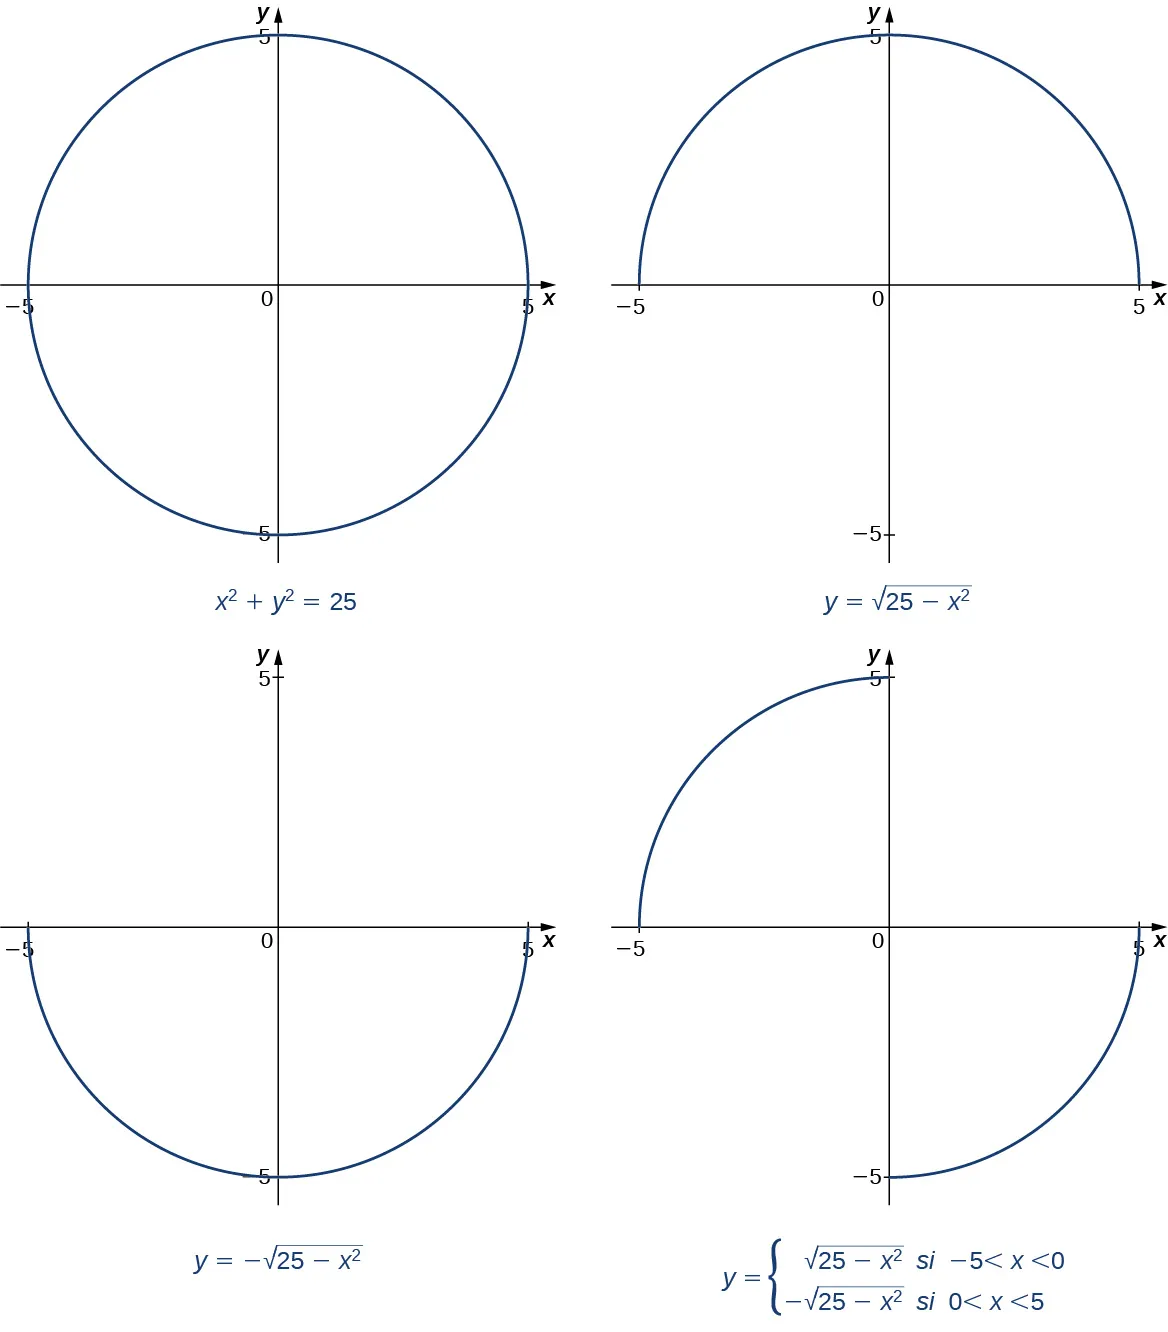 El círculo con radio 5 y centro en el origen se grafica completamente en una imagen. Entonces, solo se grafican sus segmentos en los cuadrantes I y II. Luego, solo se grafican sus segmentos en los cuadrantes III y IV. Por último, solo se grafican sus segmentos en los cuadrantes II y IV.